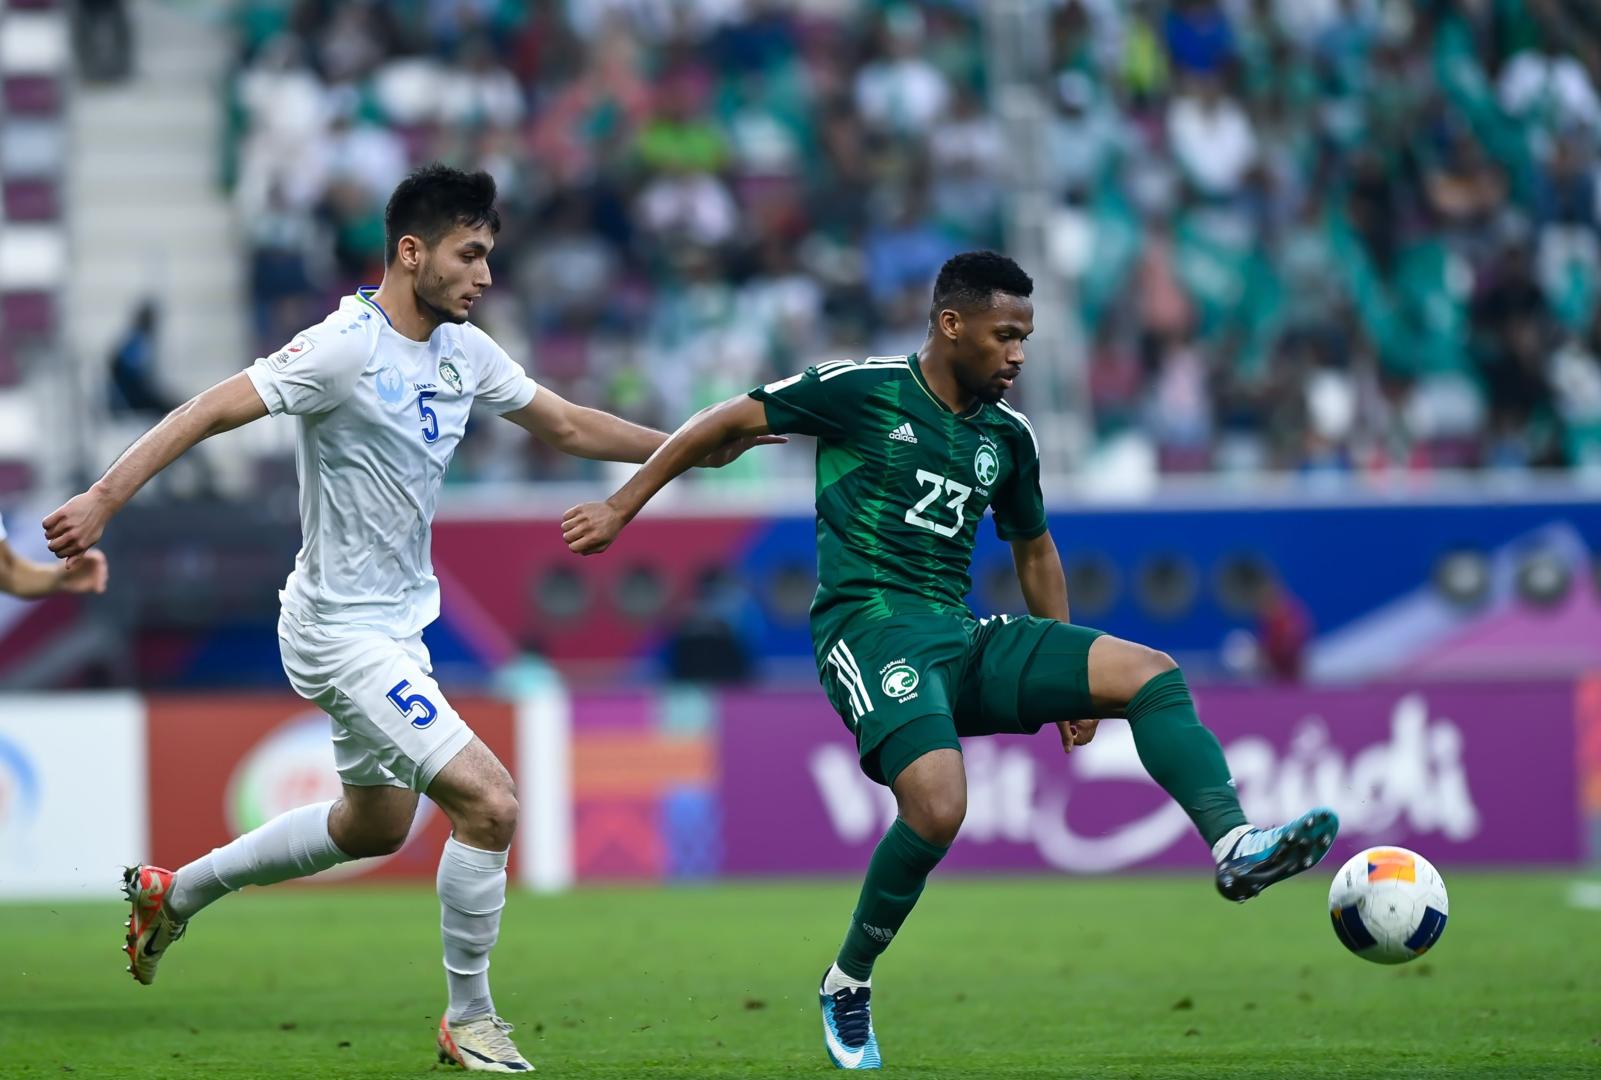 الفريق الأخضر يخرج من كأس آسيا تحت 23 عاما بعد هزيمة أوزبكستان في الدور ربع النهائي